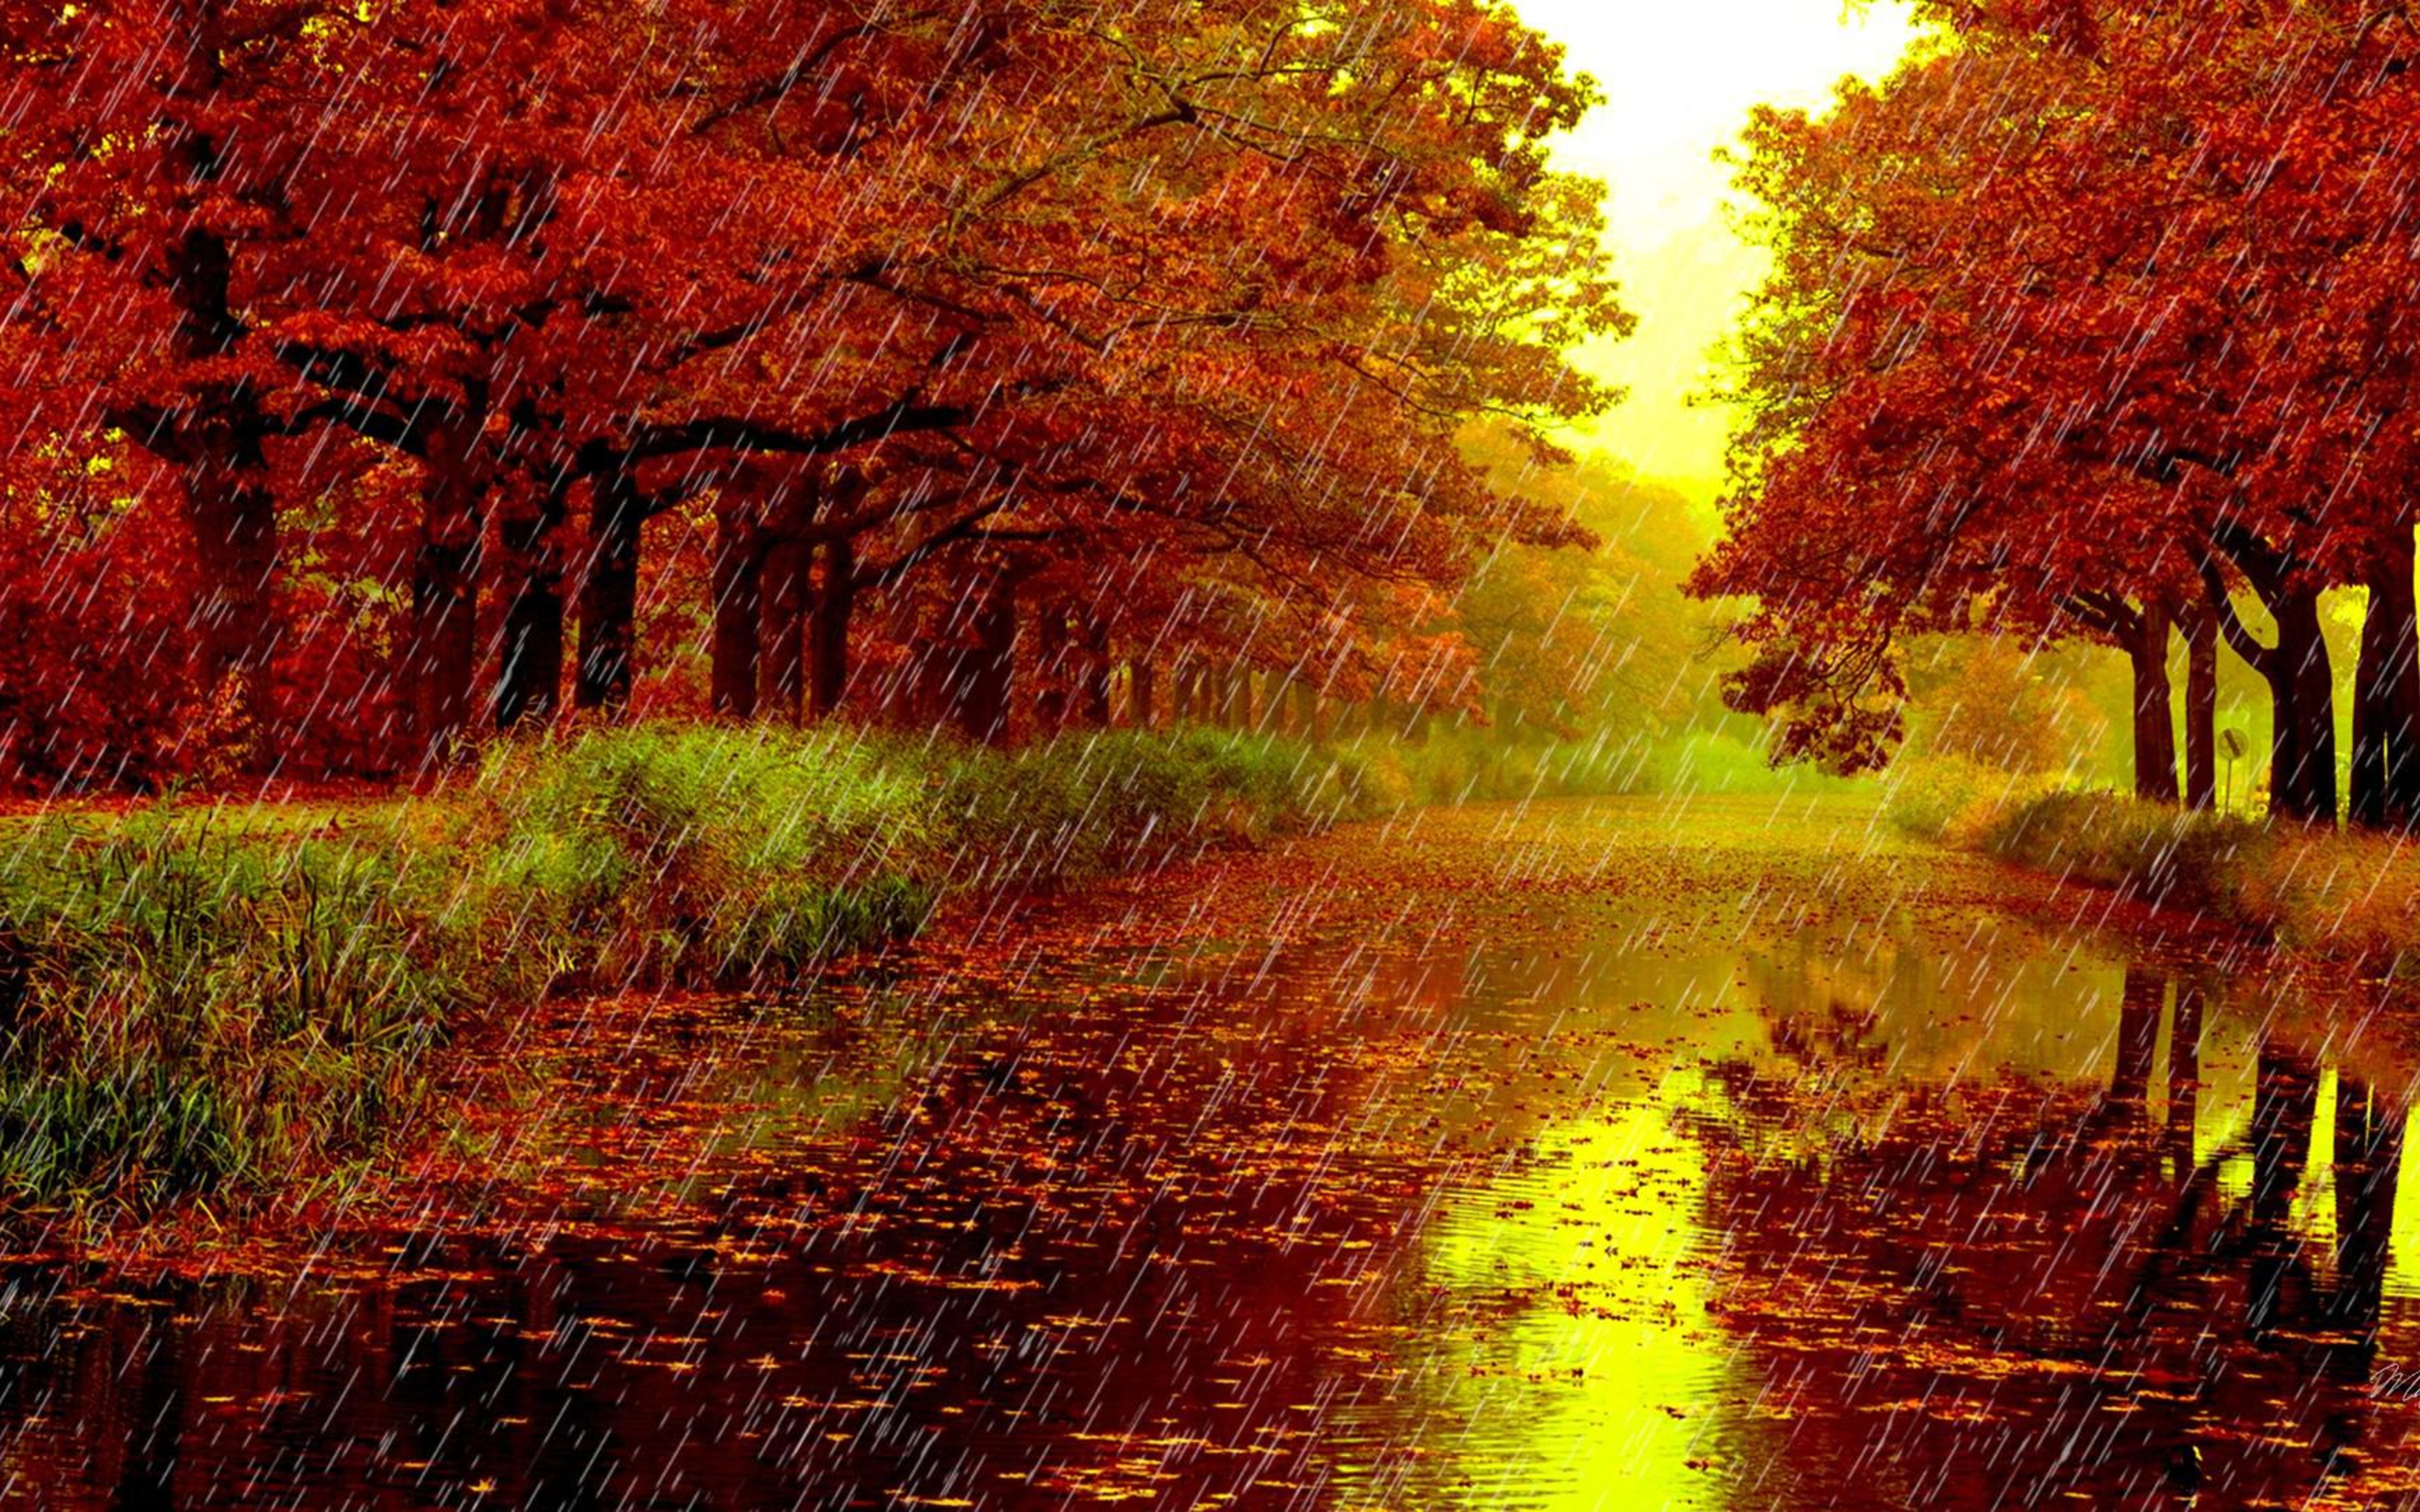 Rainy Day Wallpaper Free - Autumn Rainy Day - HD Wallpaper 